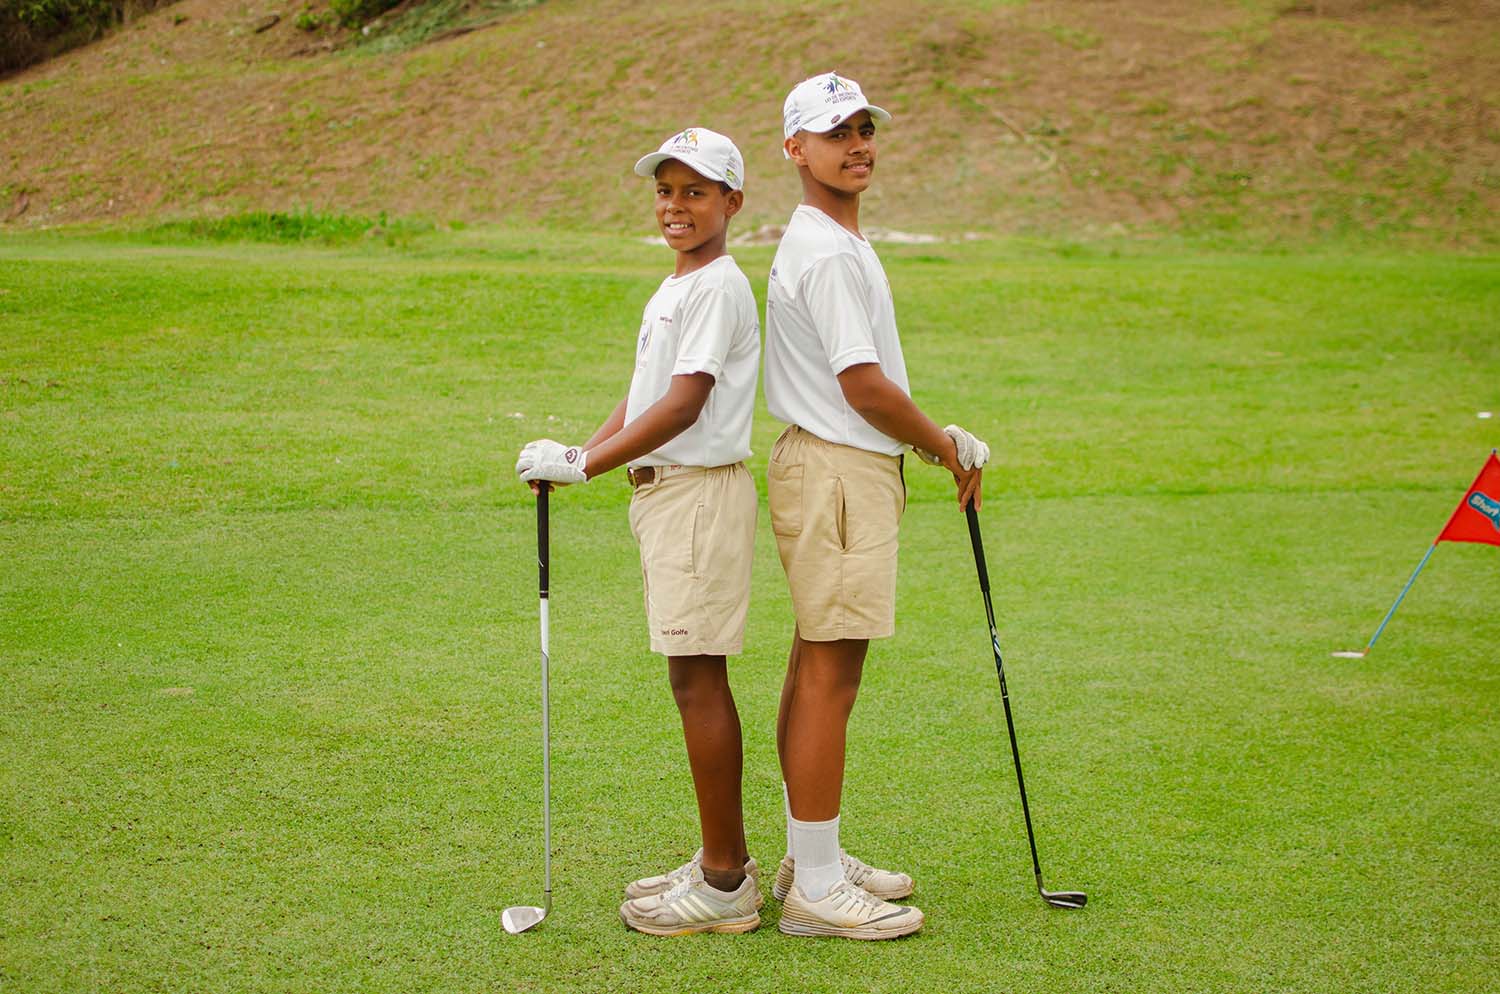 Jovens de Japeri disputarão ranking mundial em Campeonato de Golfe